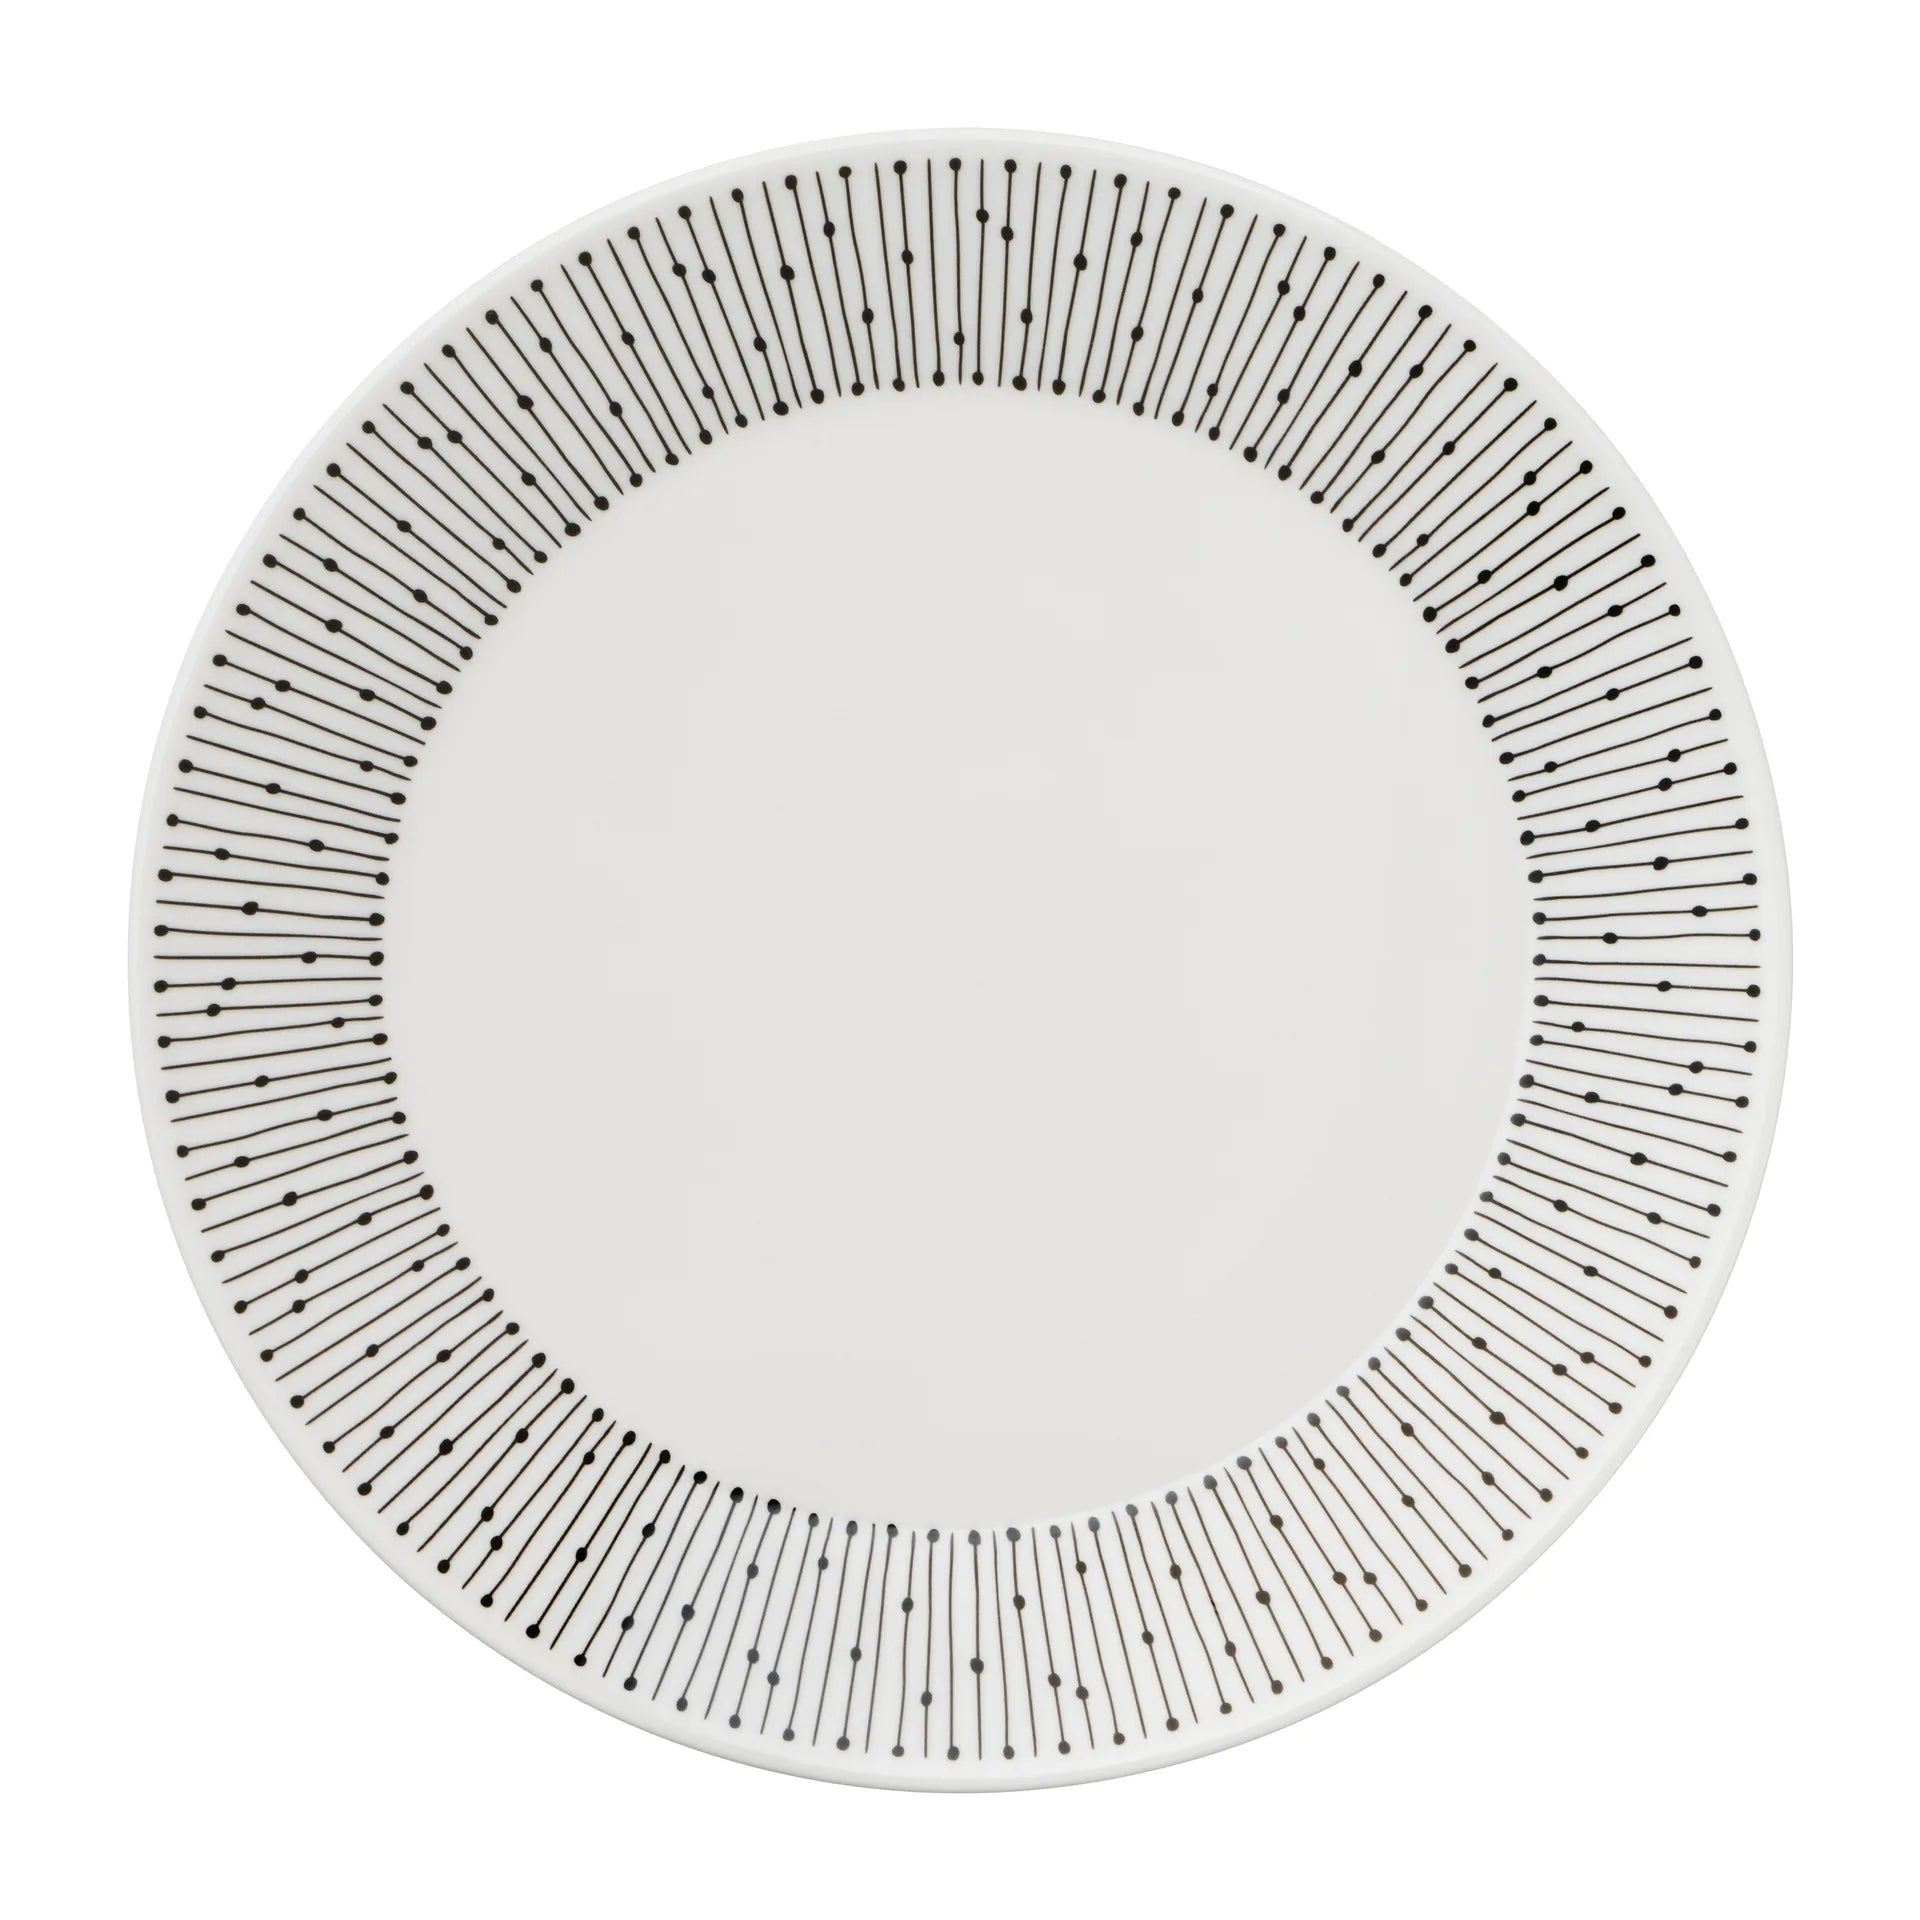 Mainio Sarastus plate Ø19 cm - Black-white